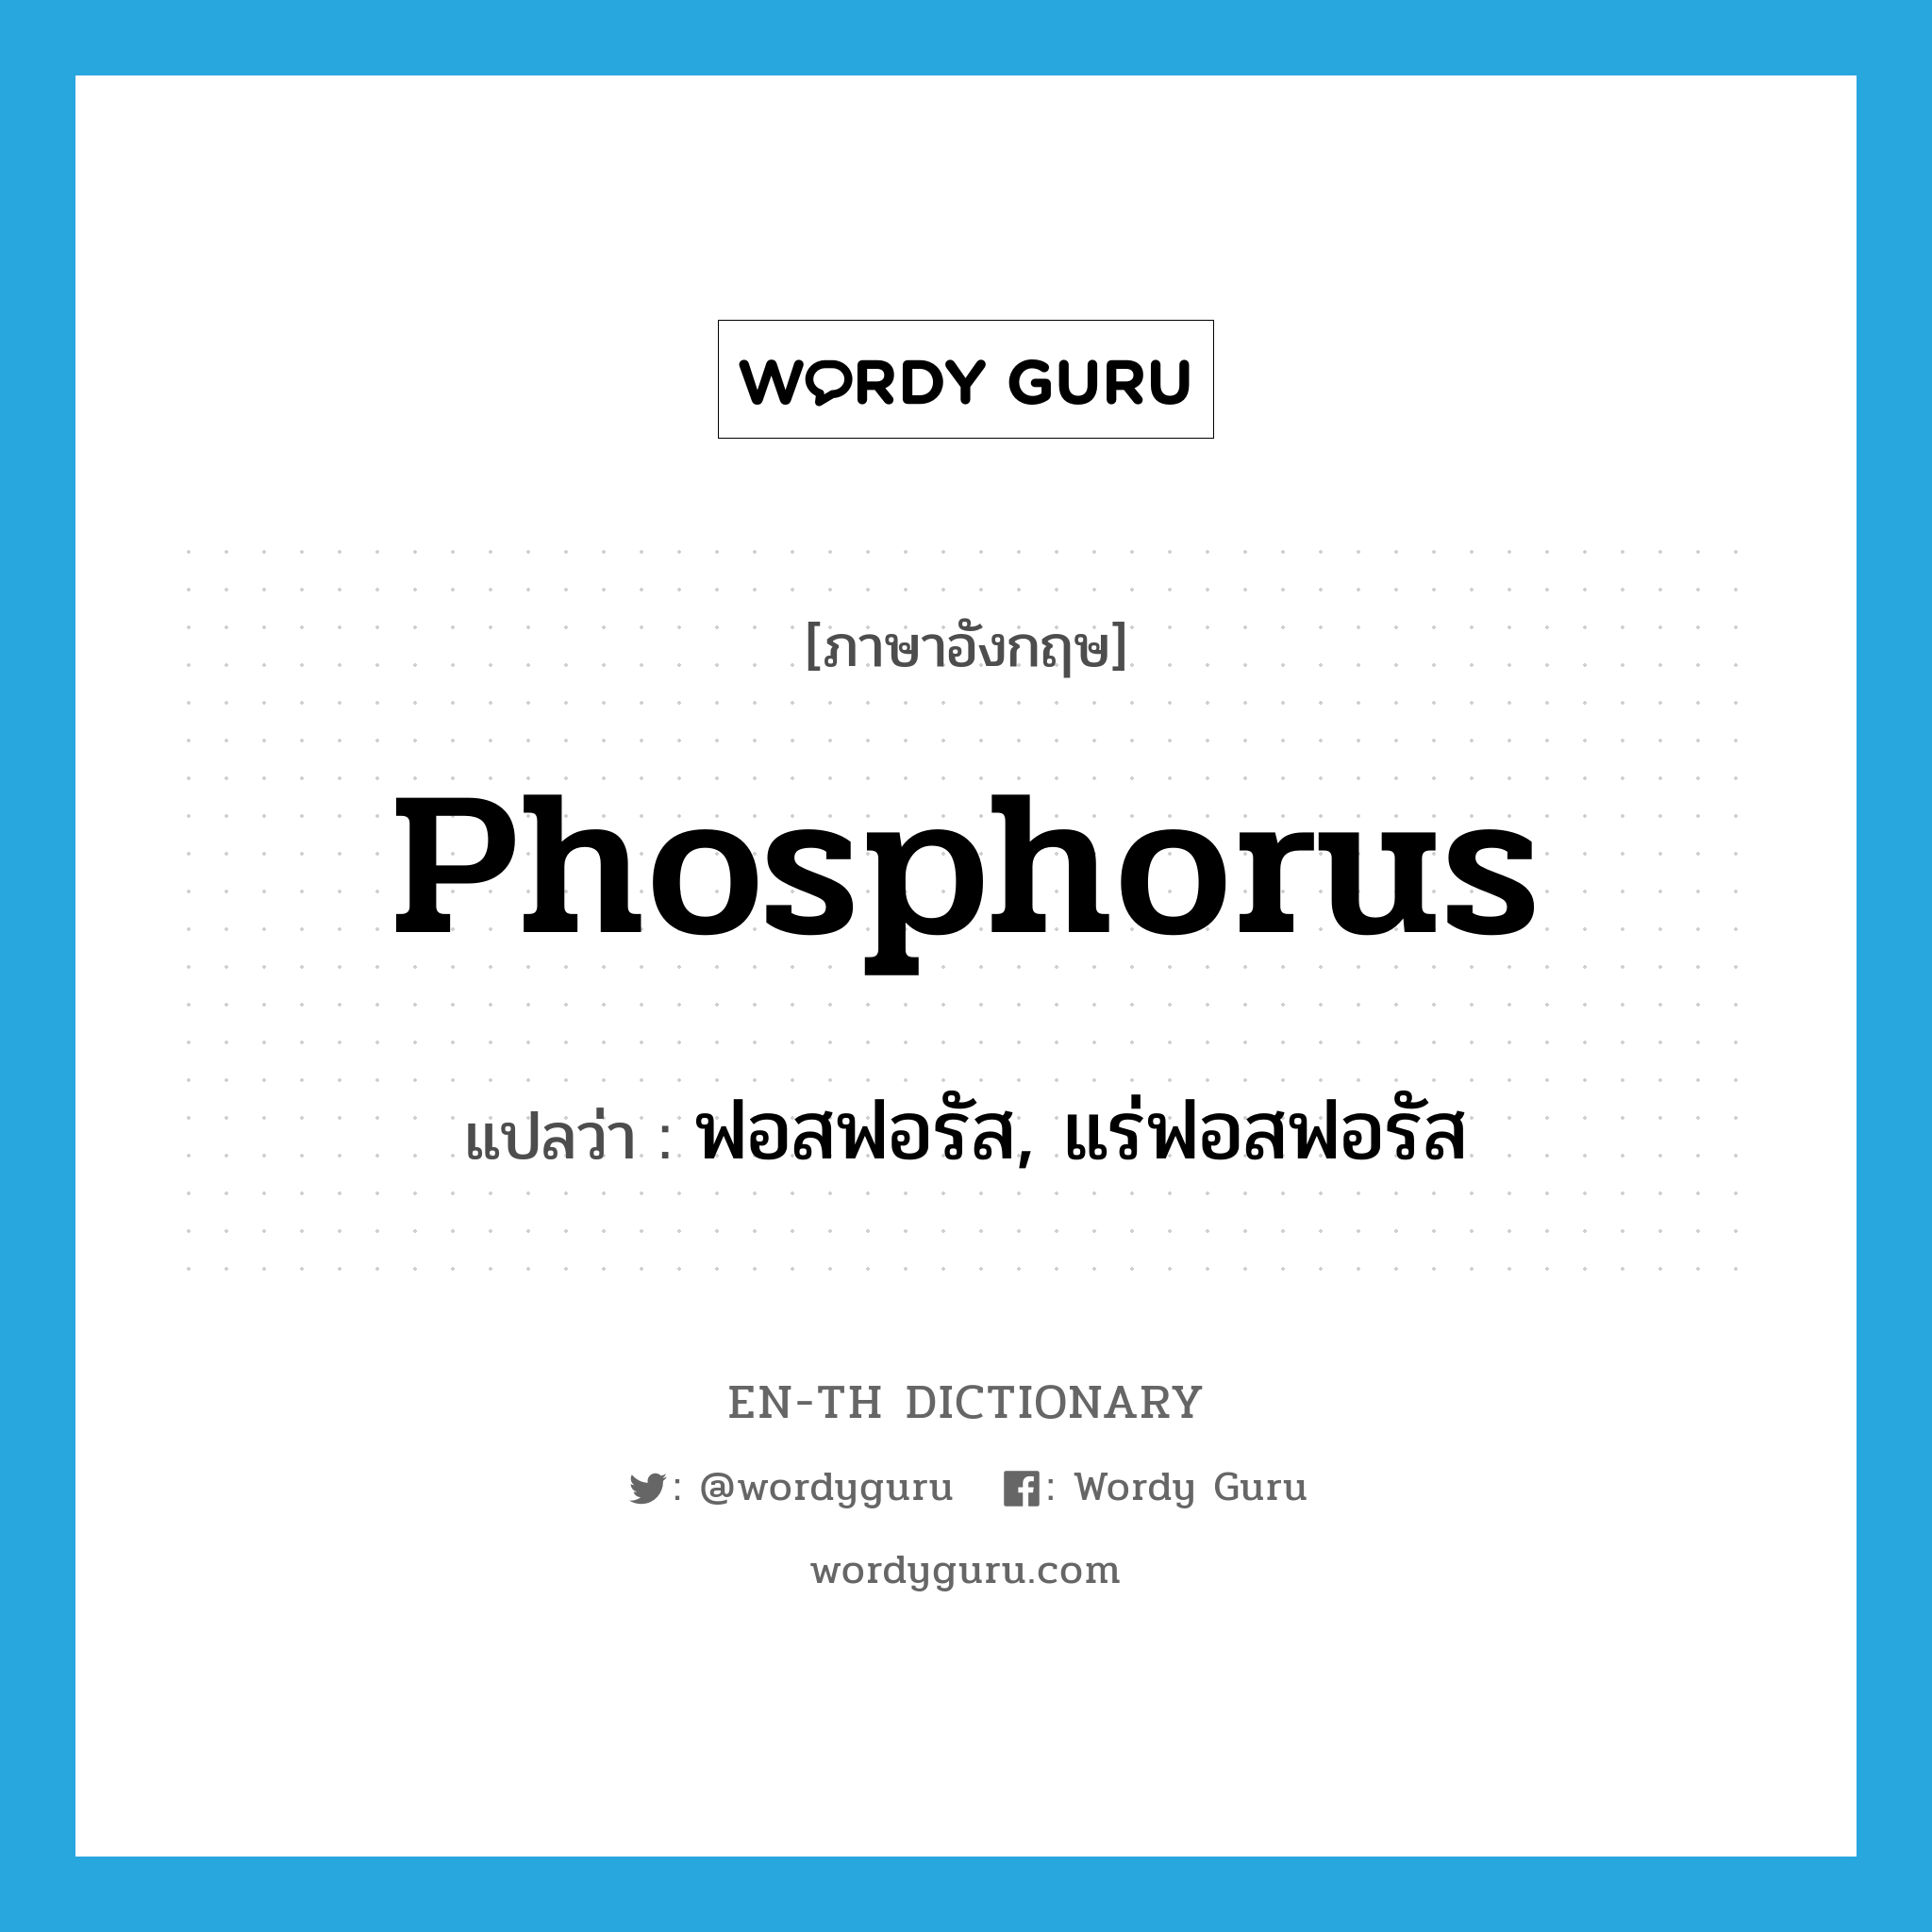 ฟอสฟอรัส, แร่ฟอสฟอรัส ภาษาอังกฤษ?, คำศัพท์ภาษาอังกฤษ ฟอสฟอรัส, แร่ฟอสฟอรัส แปลว่า phosphorus ประเภท N หมวด N